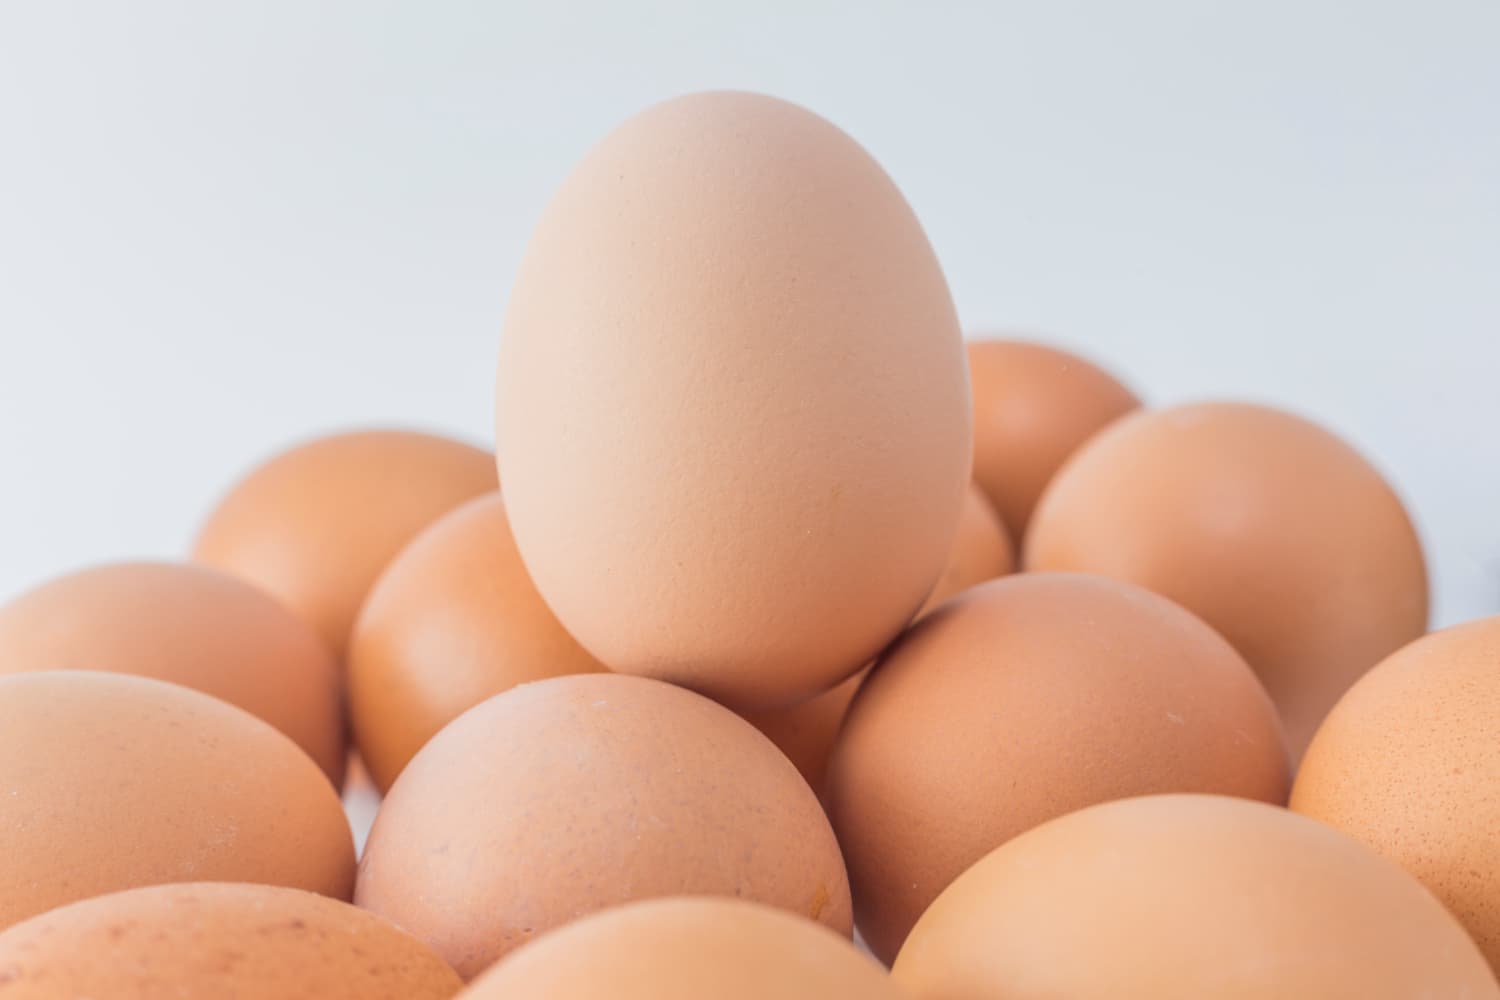 huevos en la dieta diaria